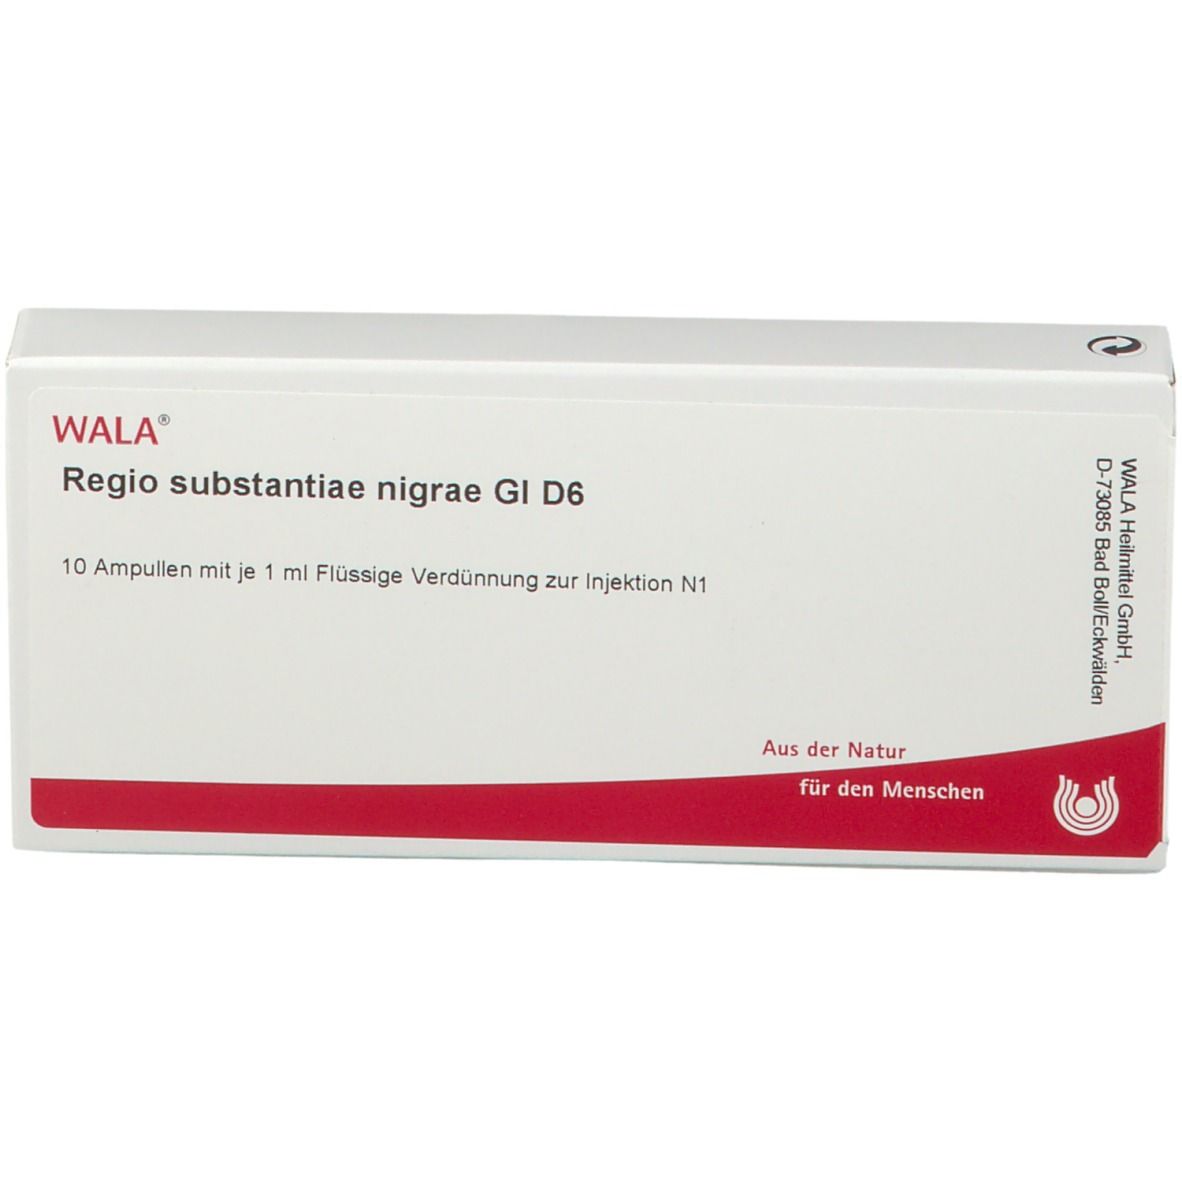 WALA® Regio substantiae nigrae Gl D 6